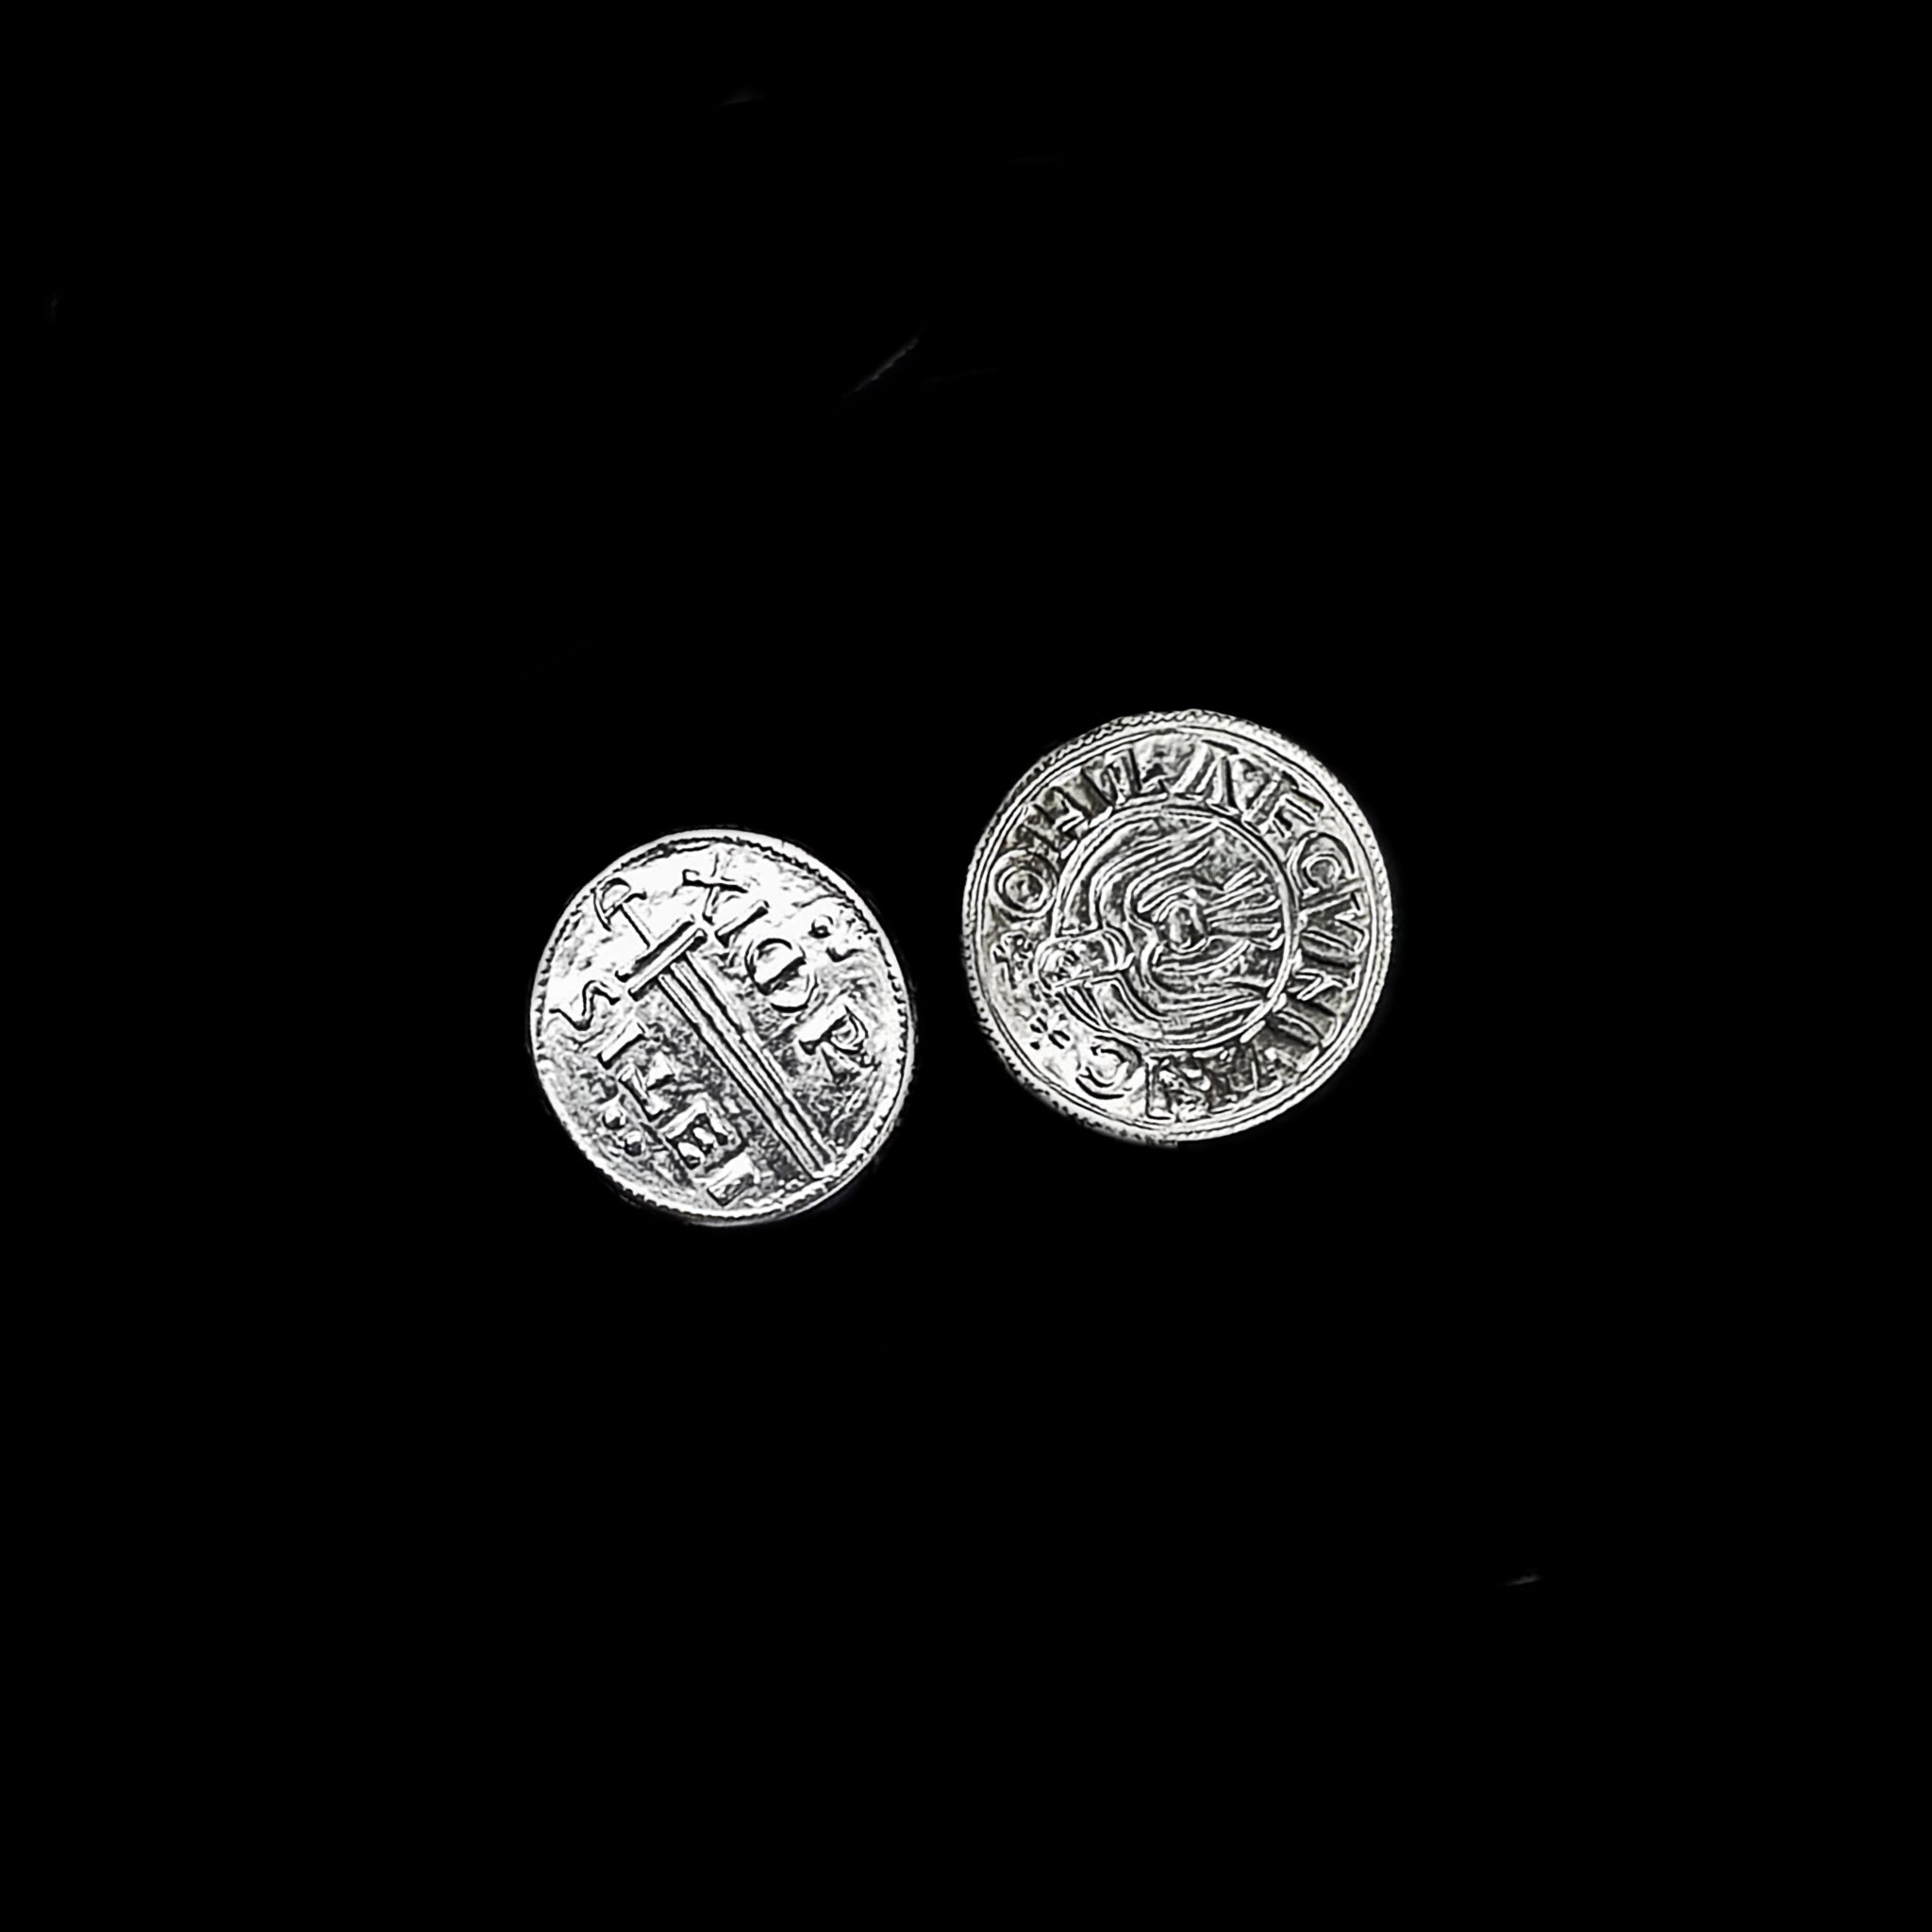 Replica Viking / Saxon Coins x 2